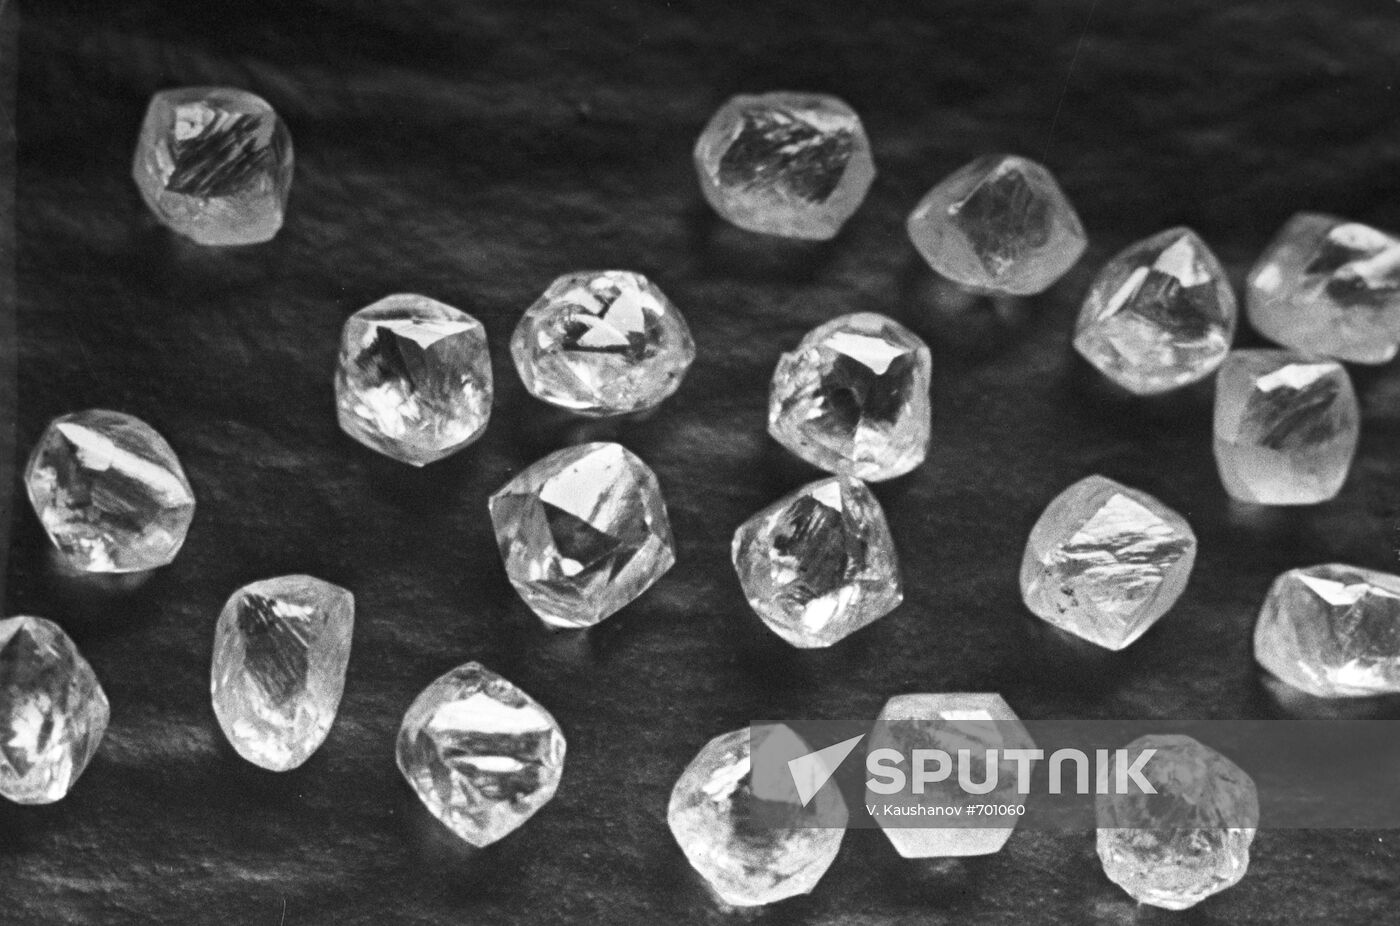 Crystals of Yakut diamonds